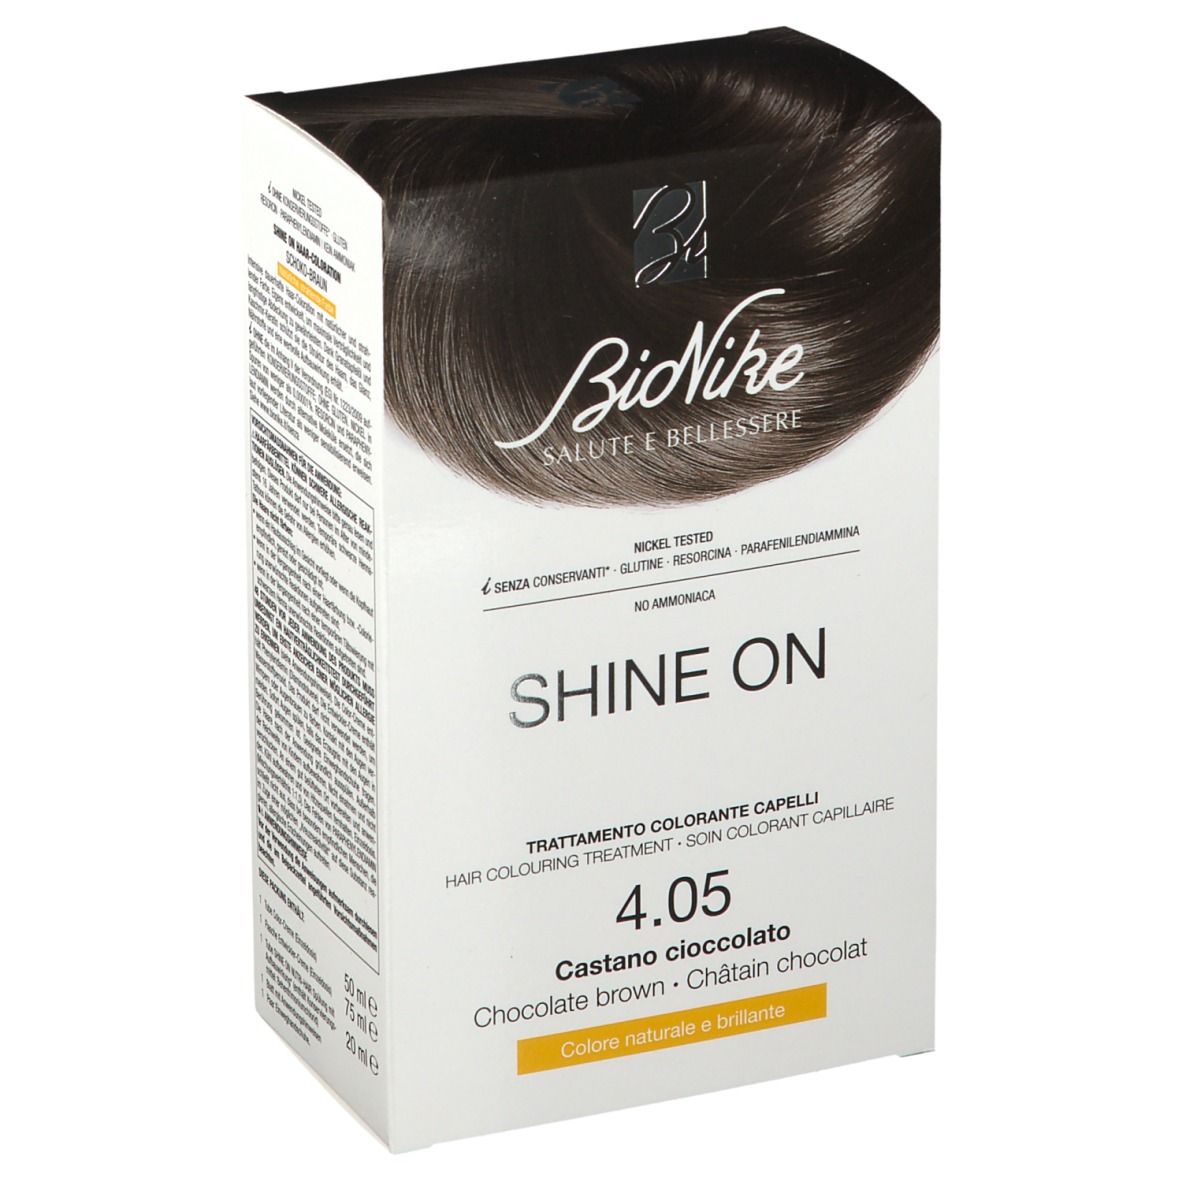 BioNike Shine On Colorante Capelli 4.05 Castano Cioccolato